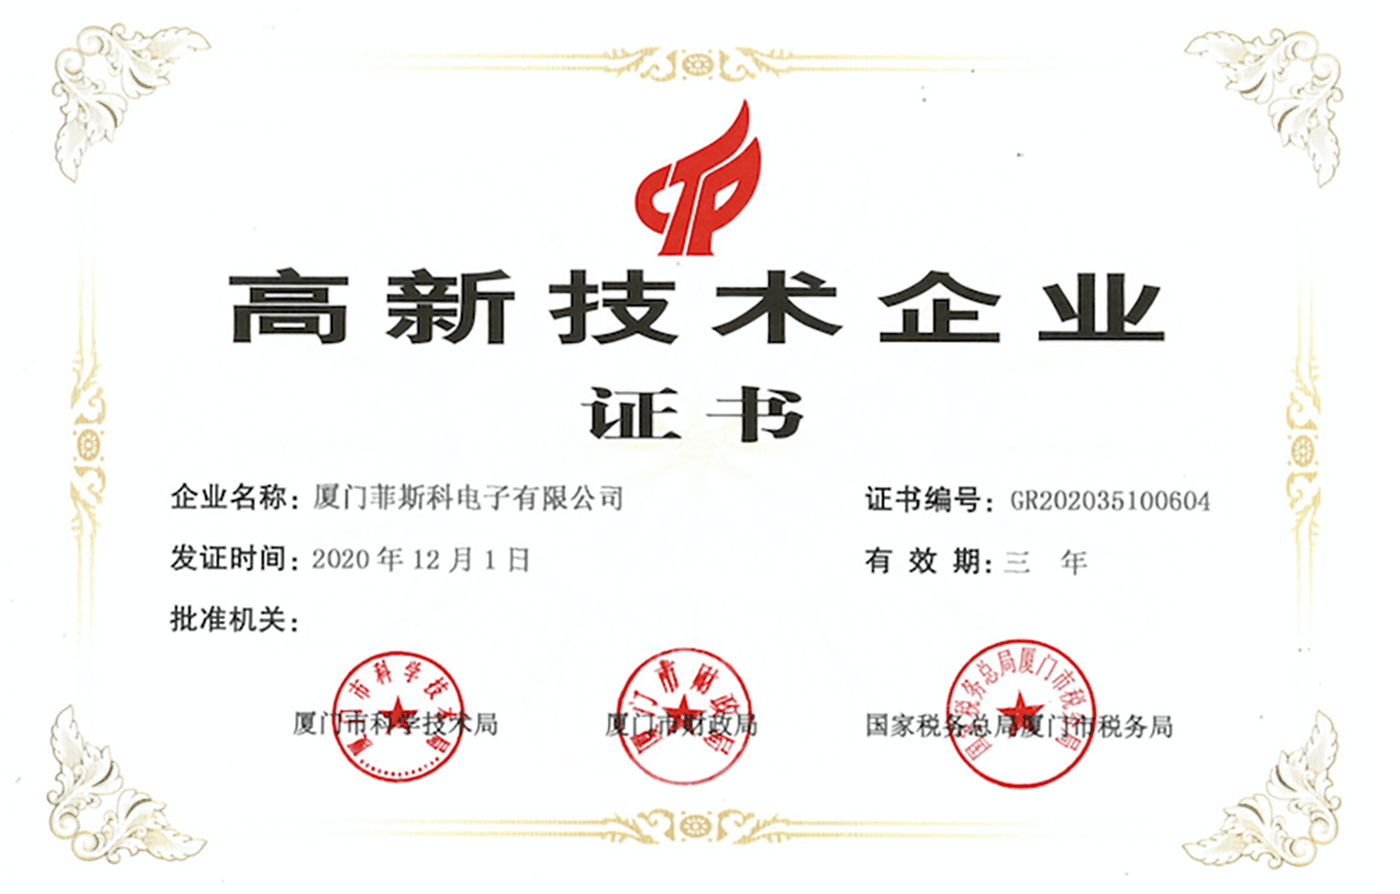 Certificat de înaltă tehnologie enterprise.png